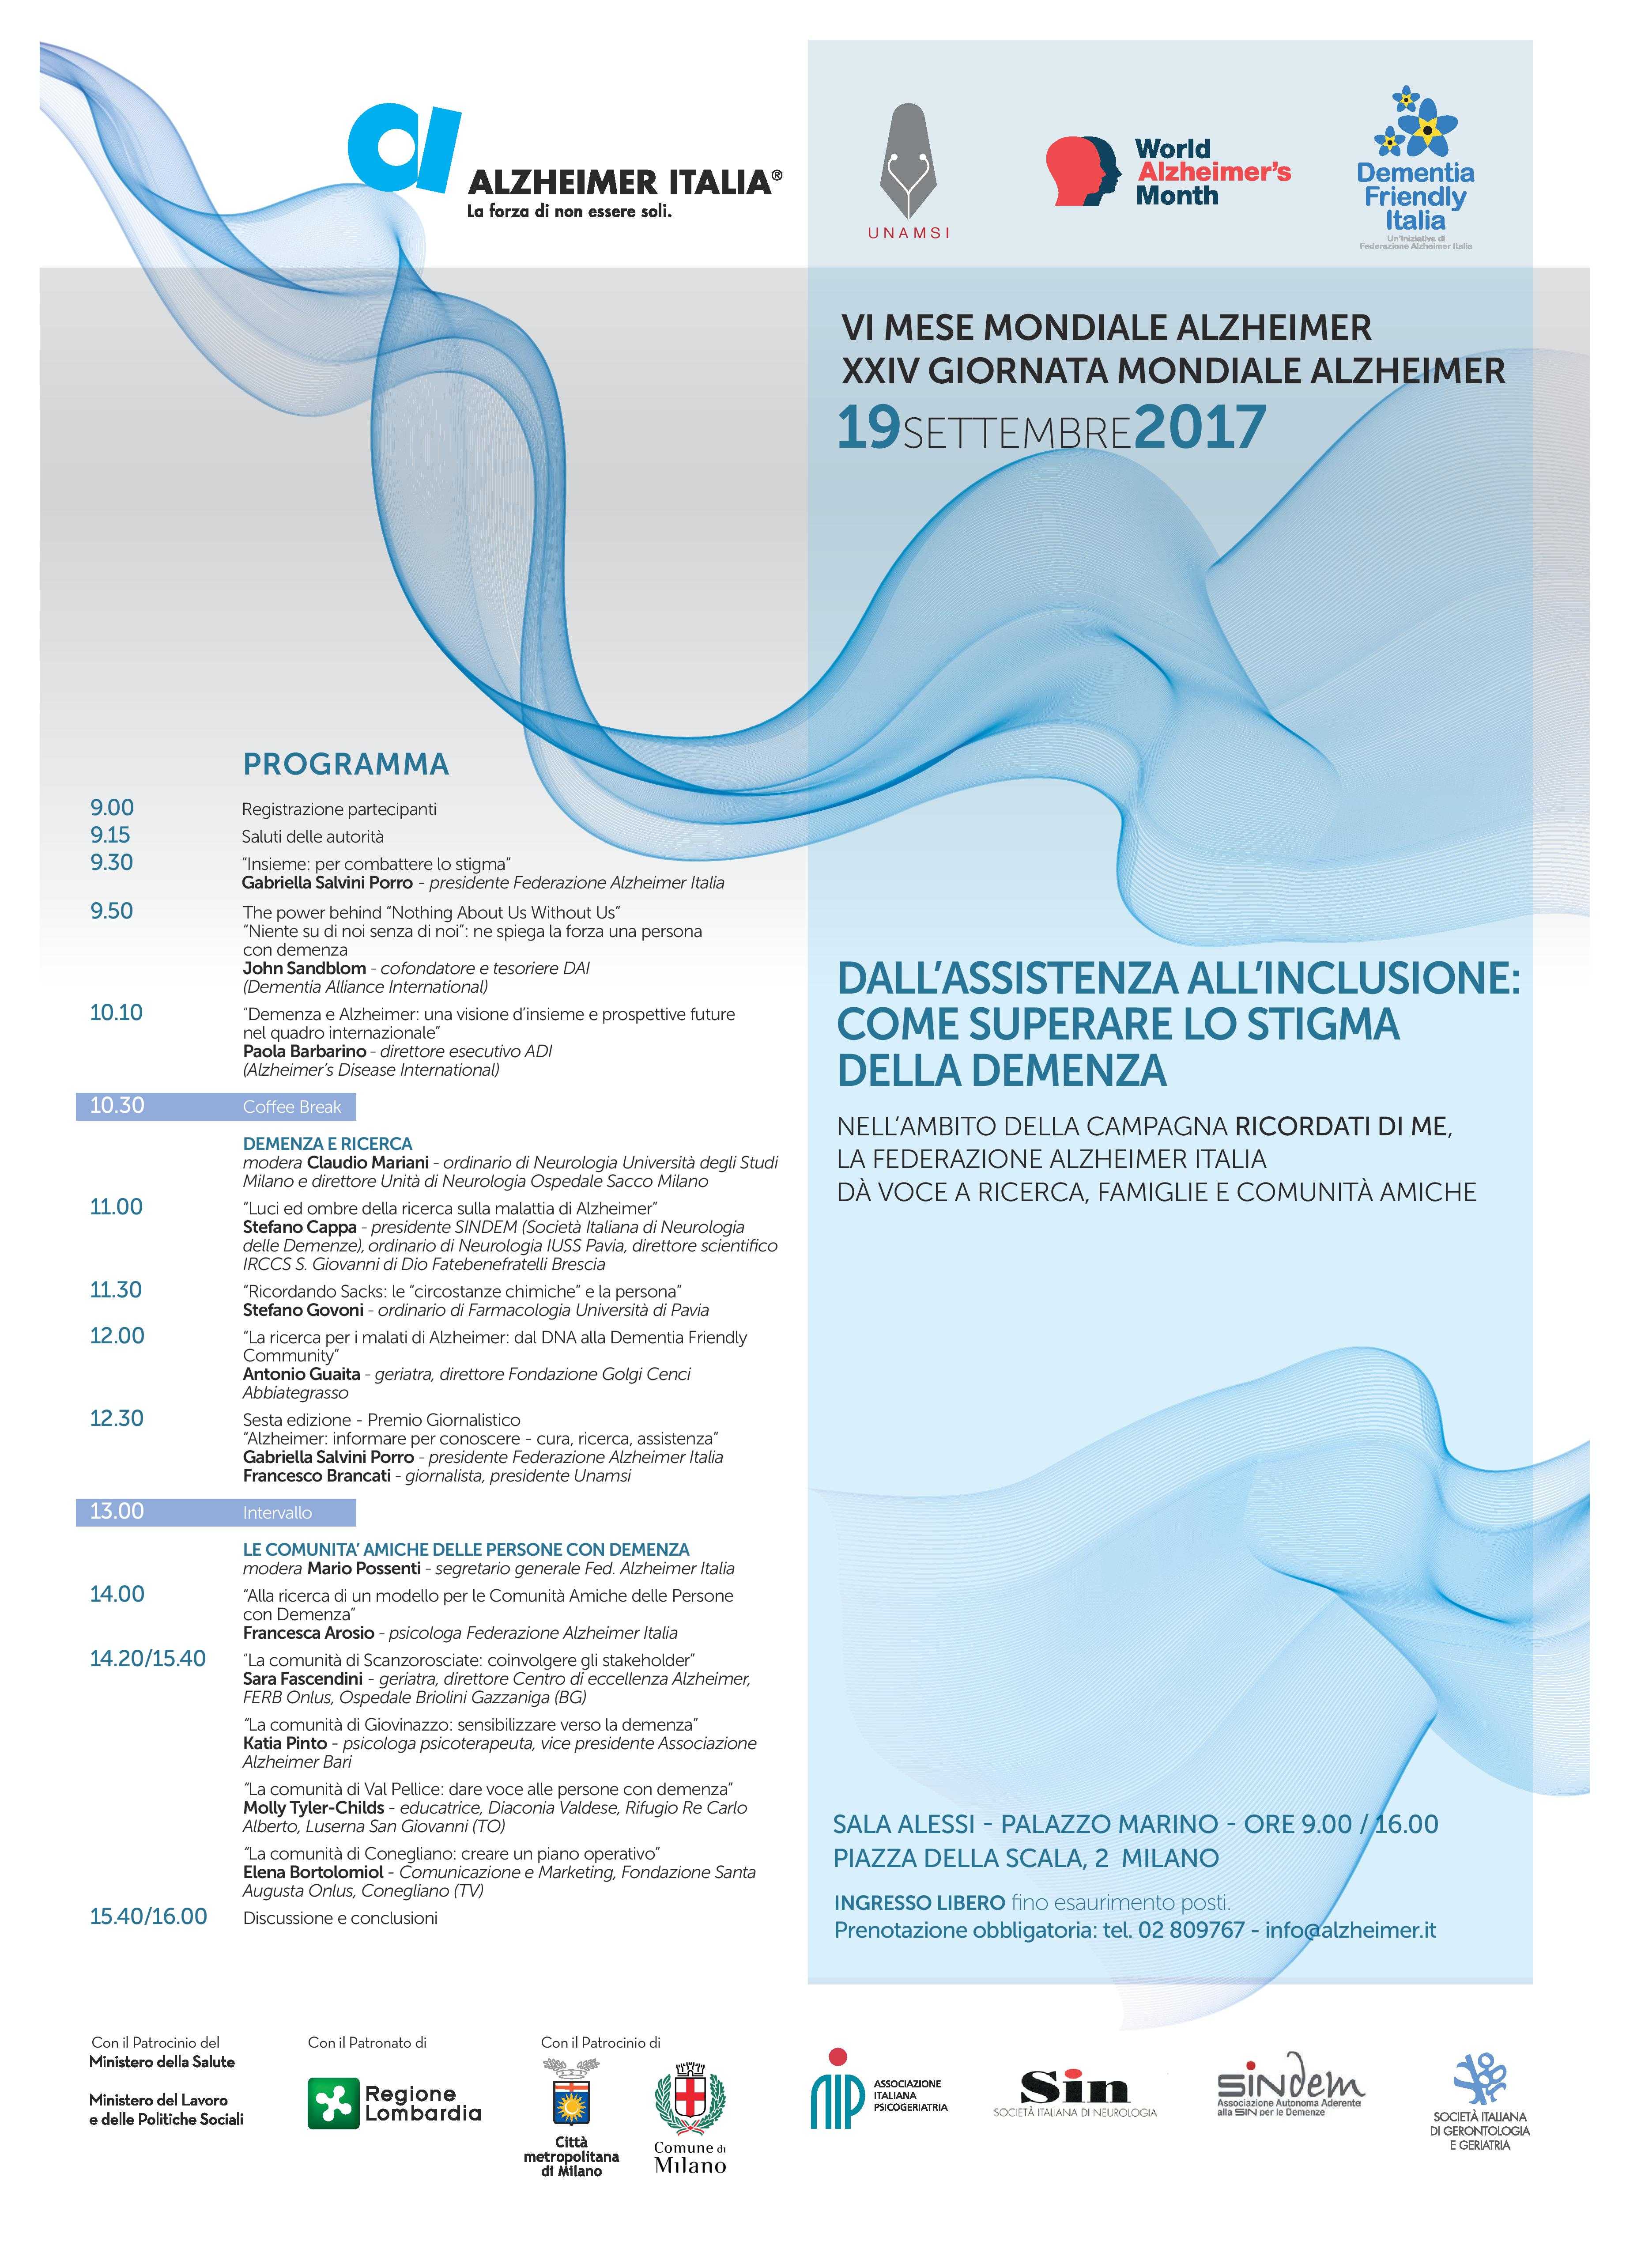 A Milano il convegno della Federazione Alzheimer